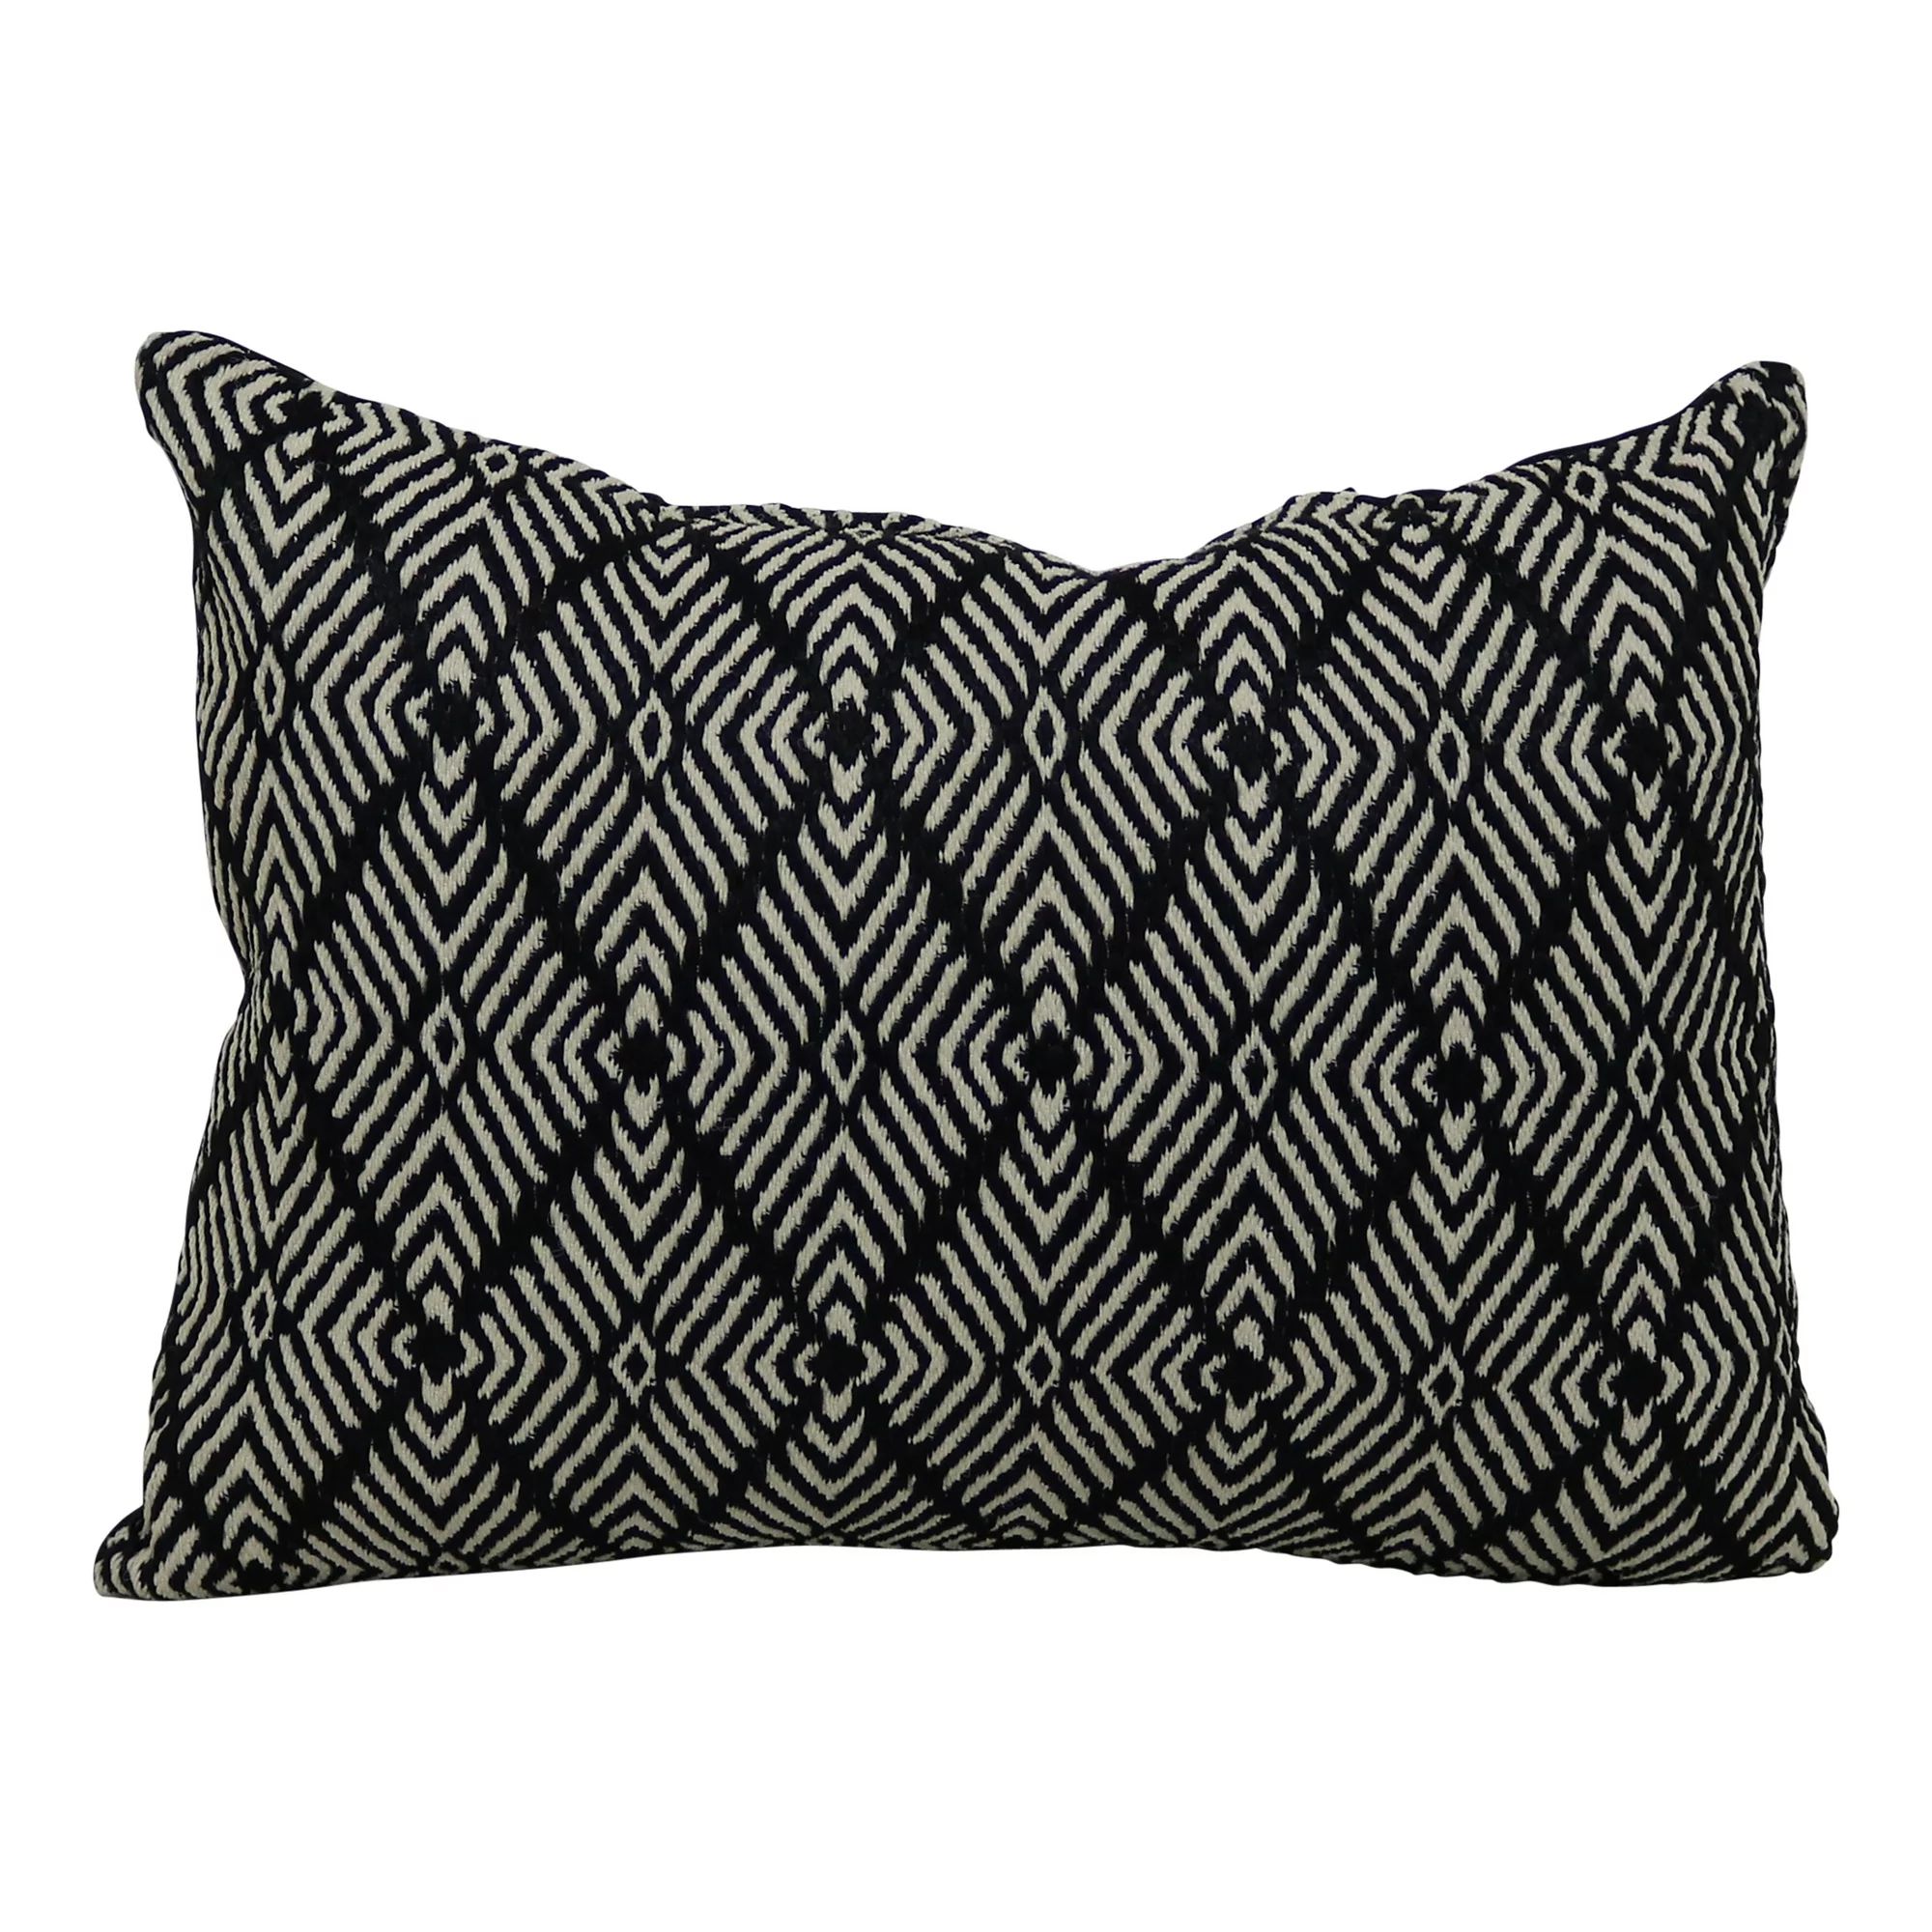 Better Homes & Gardens Lumbar Outdoor Woven Toss Pillow, 13" x 19", Black & Ivory, Single Pillow | Walmart (US)